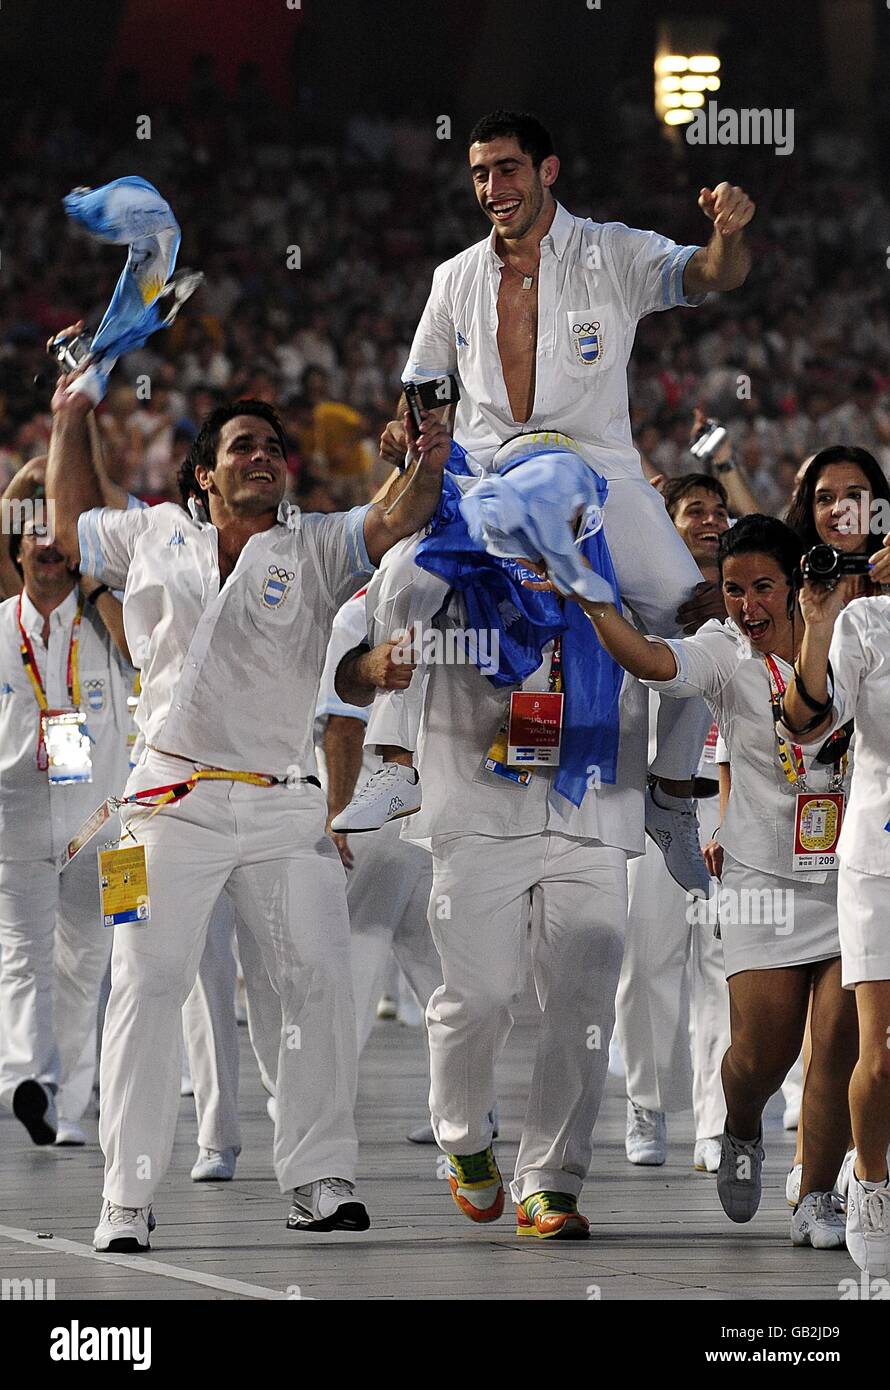 Olympische Spiele - Olympische Spiele In Peking 2008 - Eröffnungszeremonie. Das argentinische Team bei den Olympischen Spielen 2008 in Peking. Stockfoto